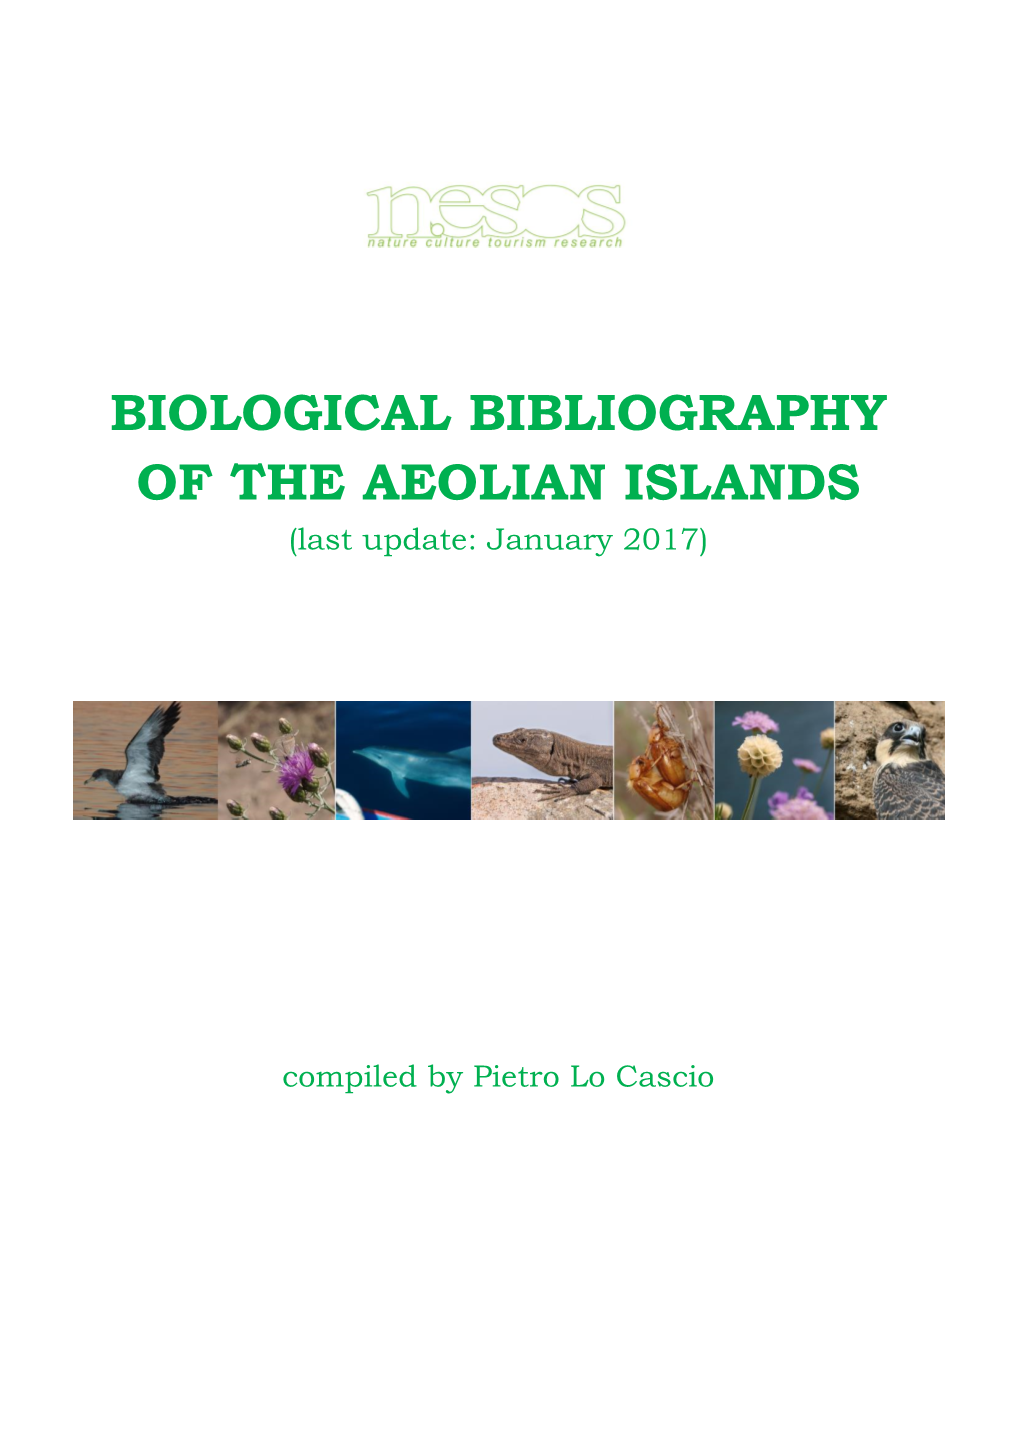 Bibliografia Naturalistico-Biologica Delle Isole Eolie